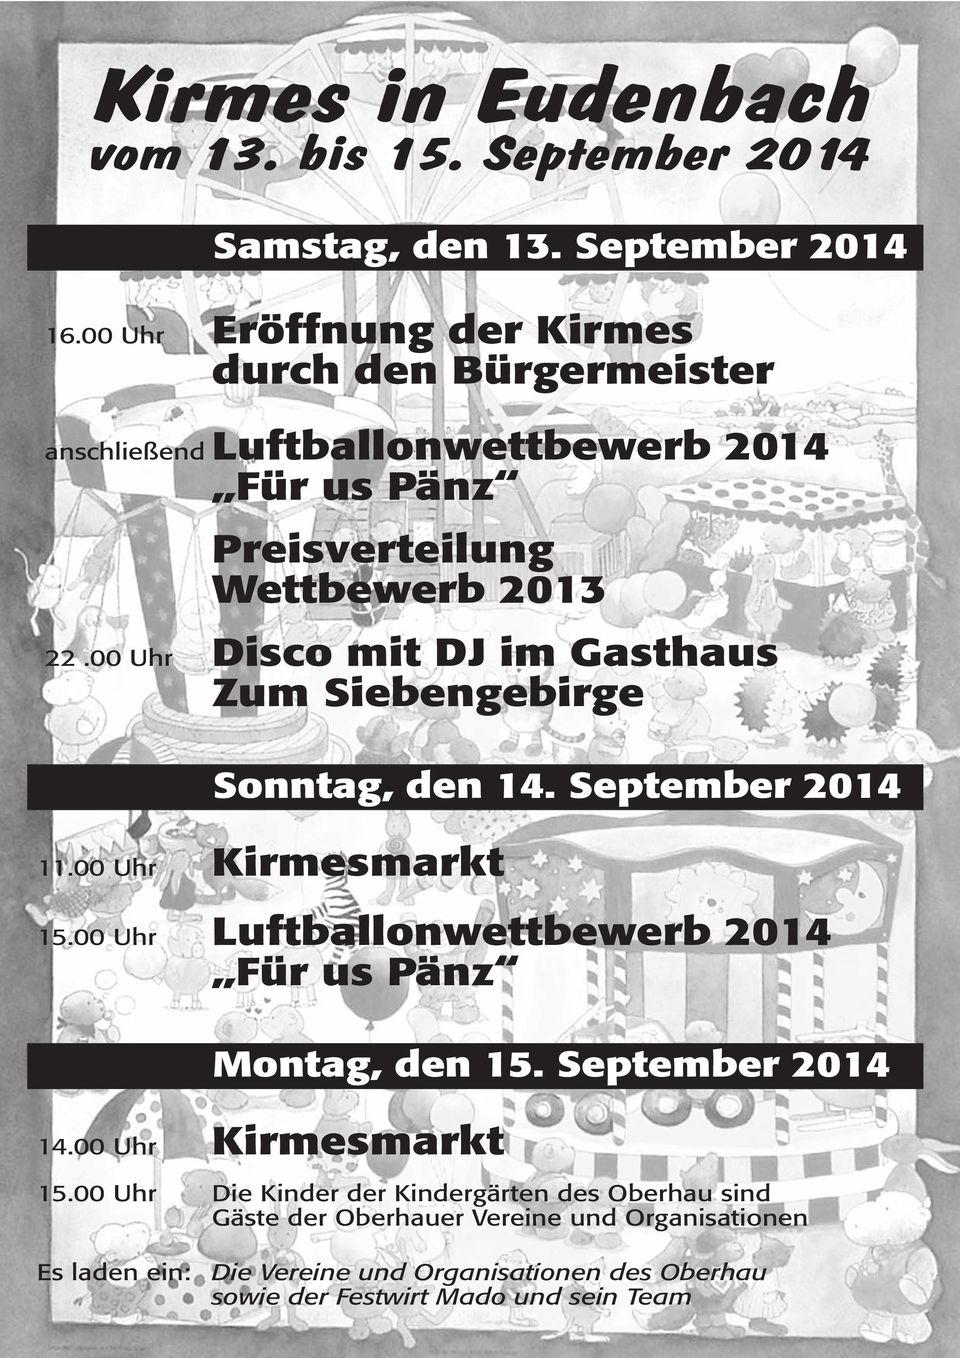 00 Uhr Disco mit DJ im Gasthaus Zum Siebengebirge Sonntag, den 14. September 2014 11.00 Uhr Kirmesmarkt 15.